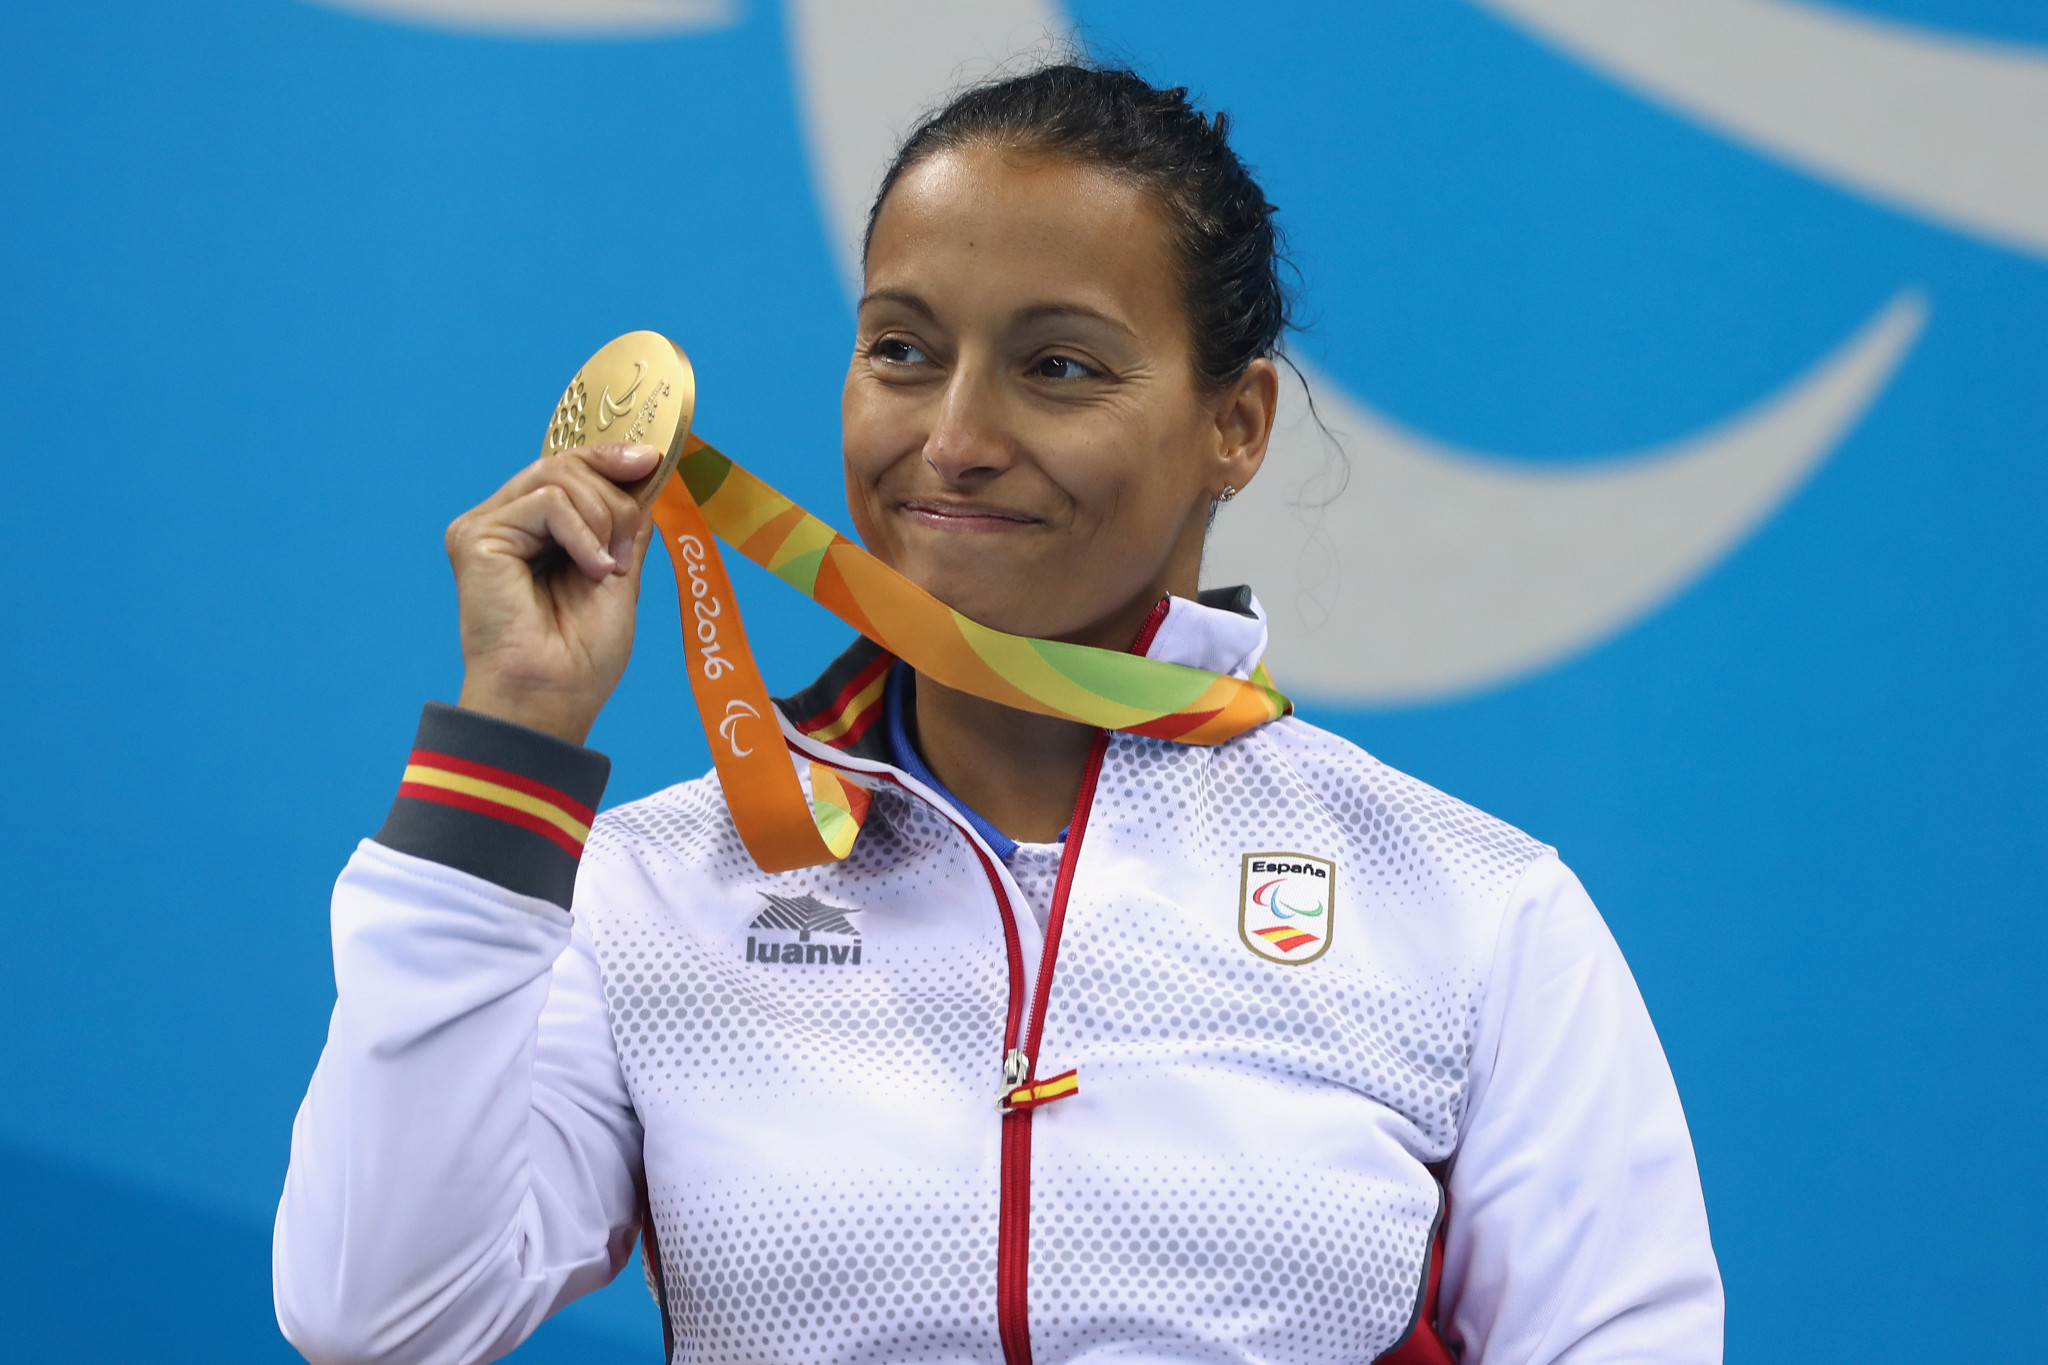 Teresa Perales es la atleta paralímpica más condecorada de España, habiendo aparecido en los últimos cinco juegos y ganado 26 medallas © Getty Images